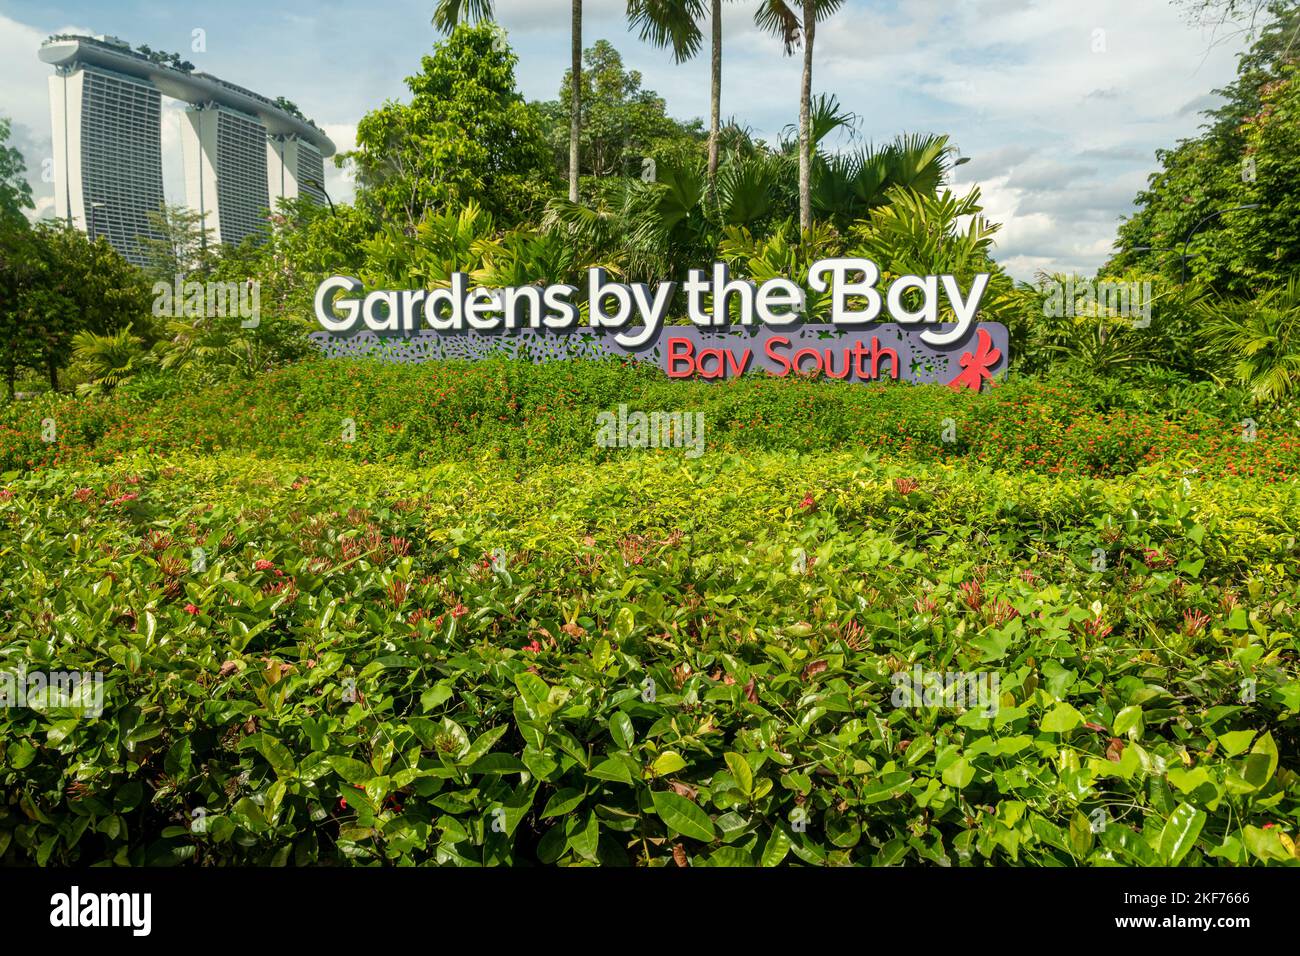 Superbäume in Gardens by the Bay, Singapur. Die baumähnlichen Strukturen sind mit Umwelttechnologien ausgestattet, die die ökologische Funktion nachahmen o Stockfoto